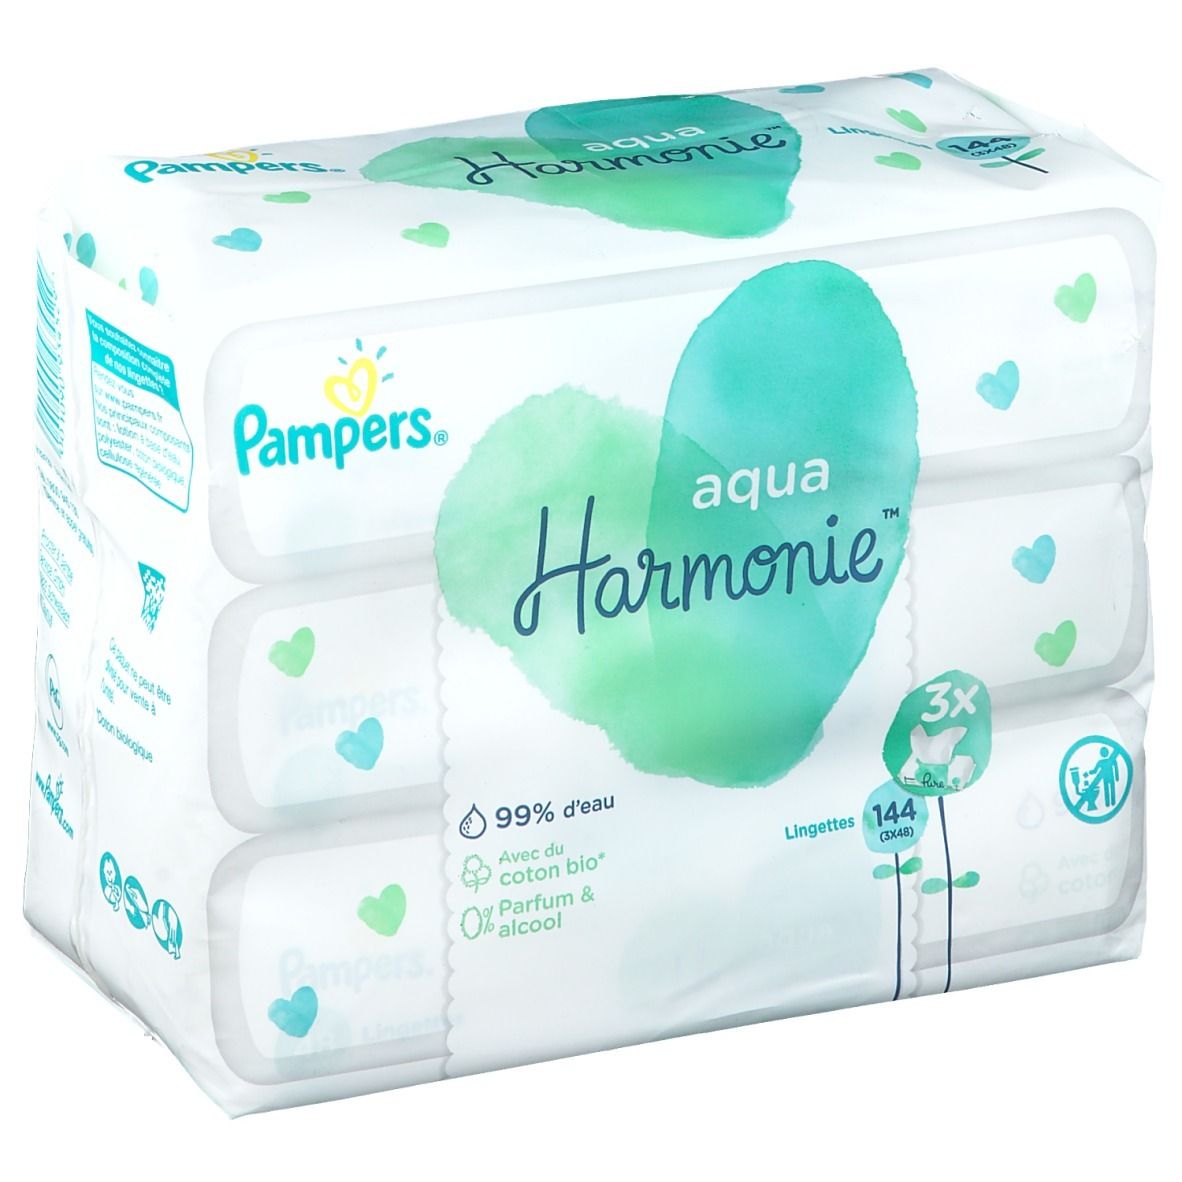 Pharmacie Des Arts - Parapharmacie Pampers Aqua Harmonie Lingette Imprégnée  2 Paquets/48 - AUCAMVILLE